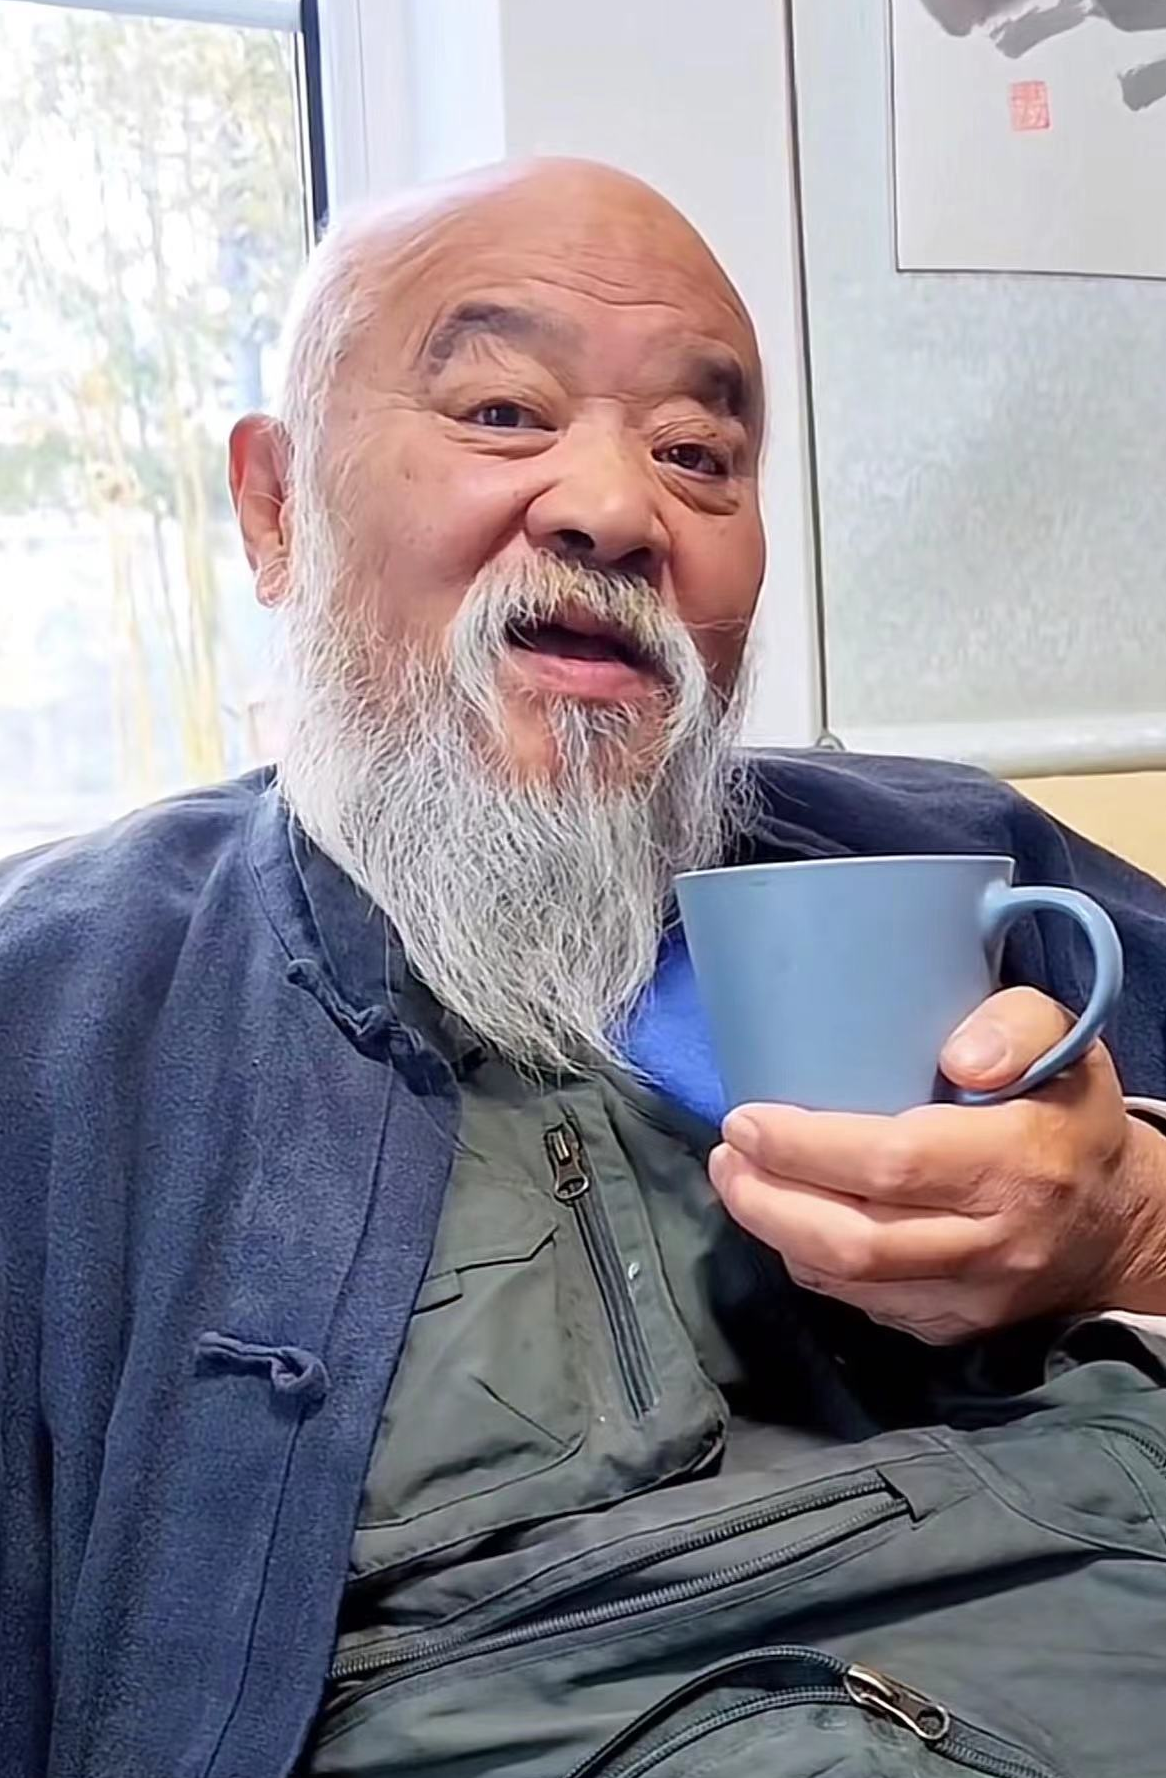 67岁李琦退休后在北京生活,衣着邋遢皱纹横生,光头模样似寿星公